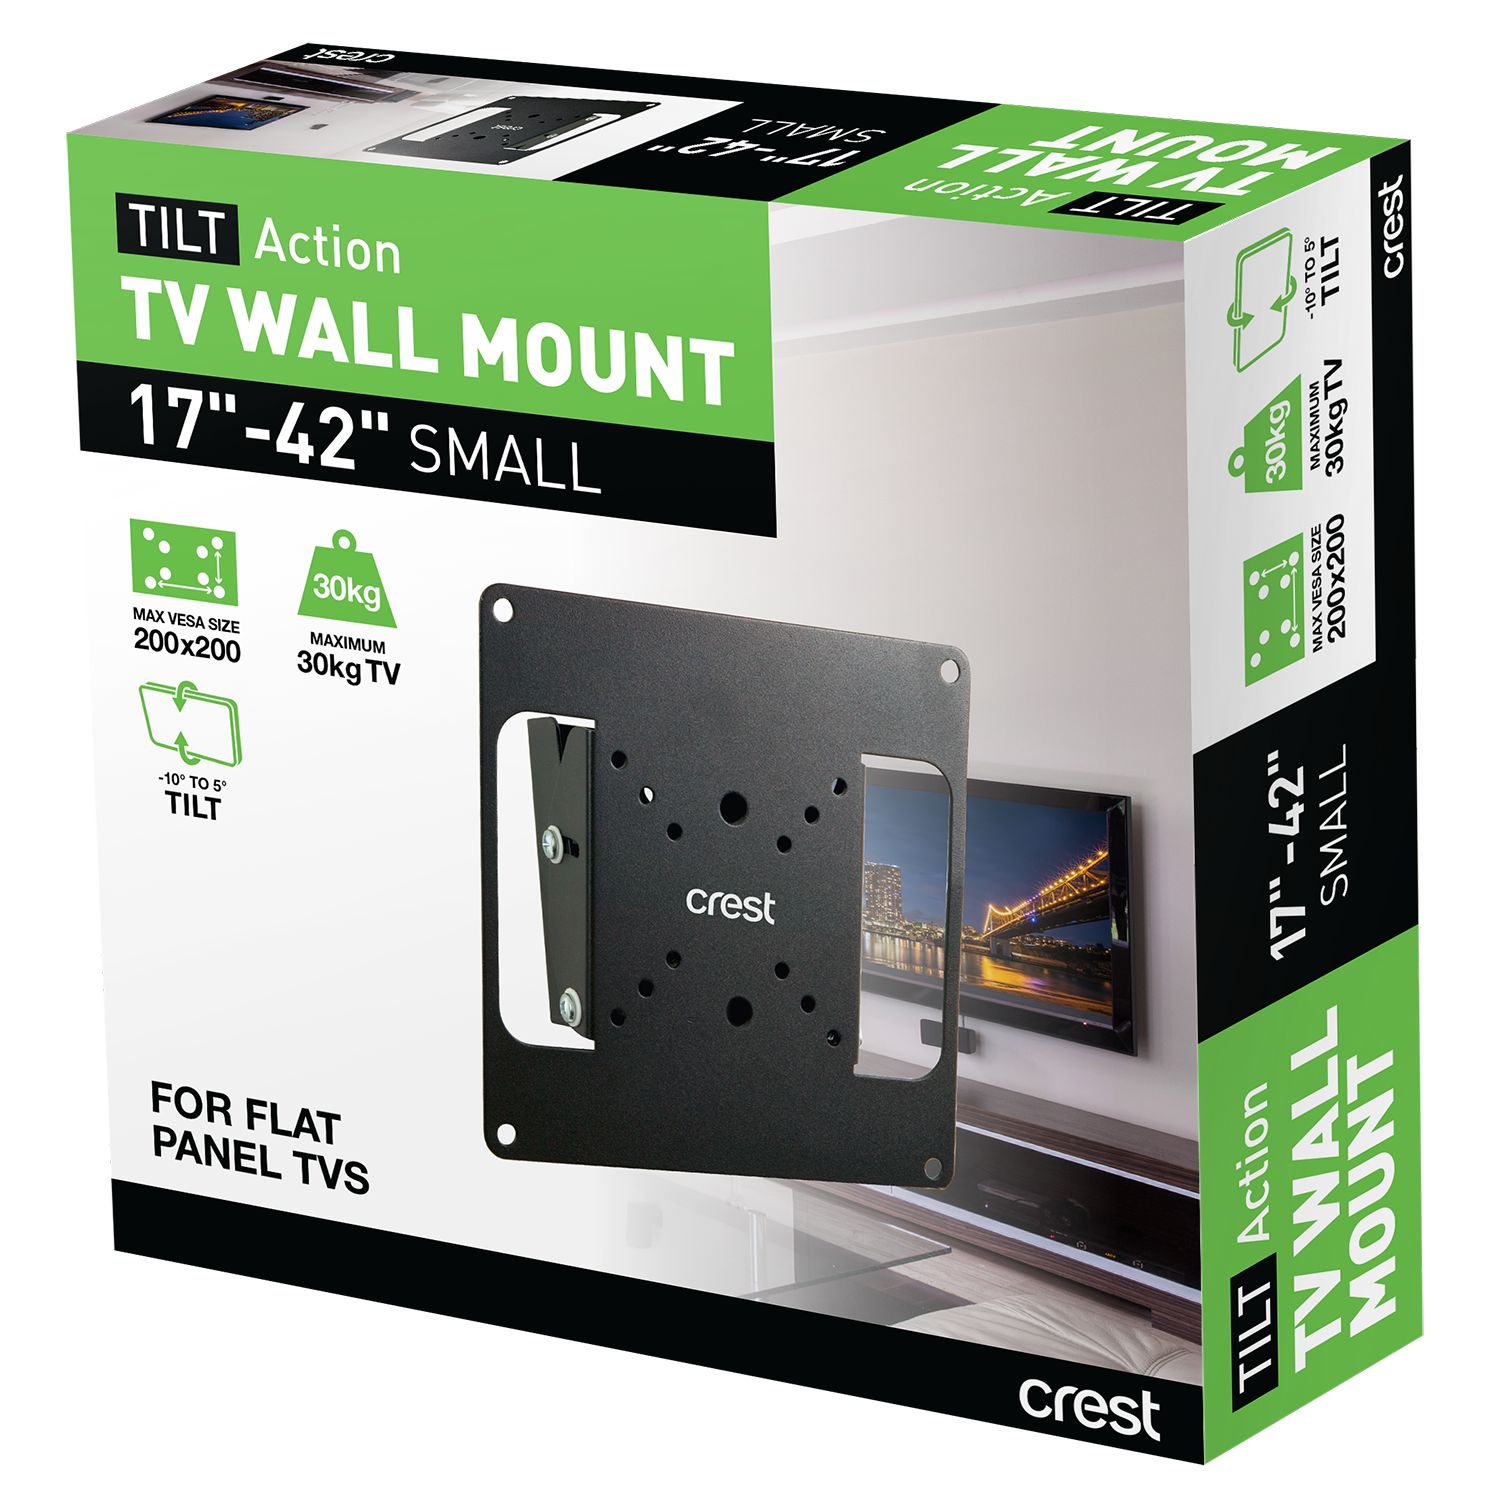 Tilt TV Wall Mount - 17" - 42"